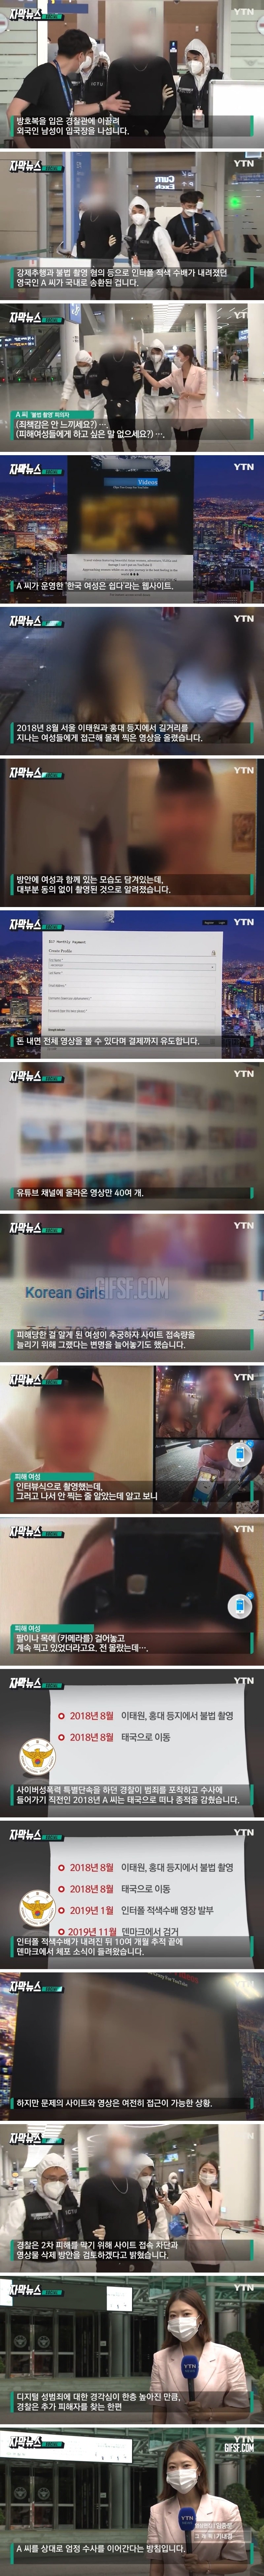 한국 여성은 쉽다 .',불법 촬영', 외국인 국내로.jpg